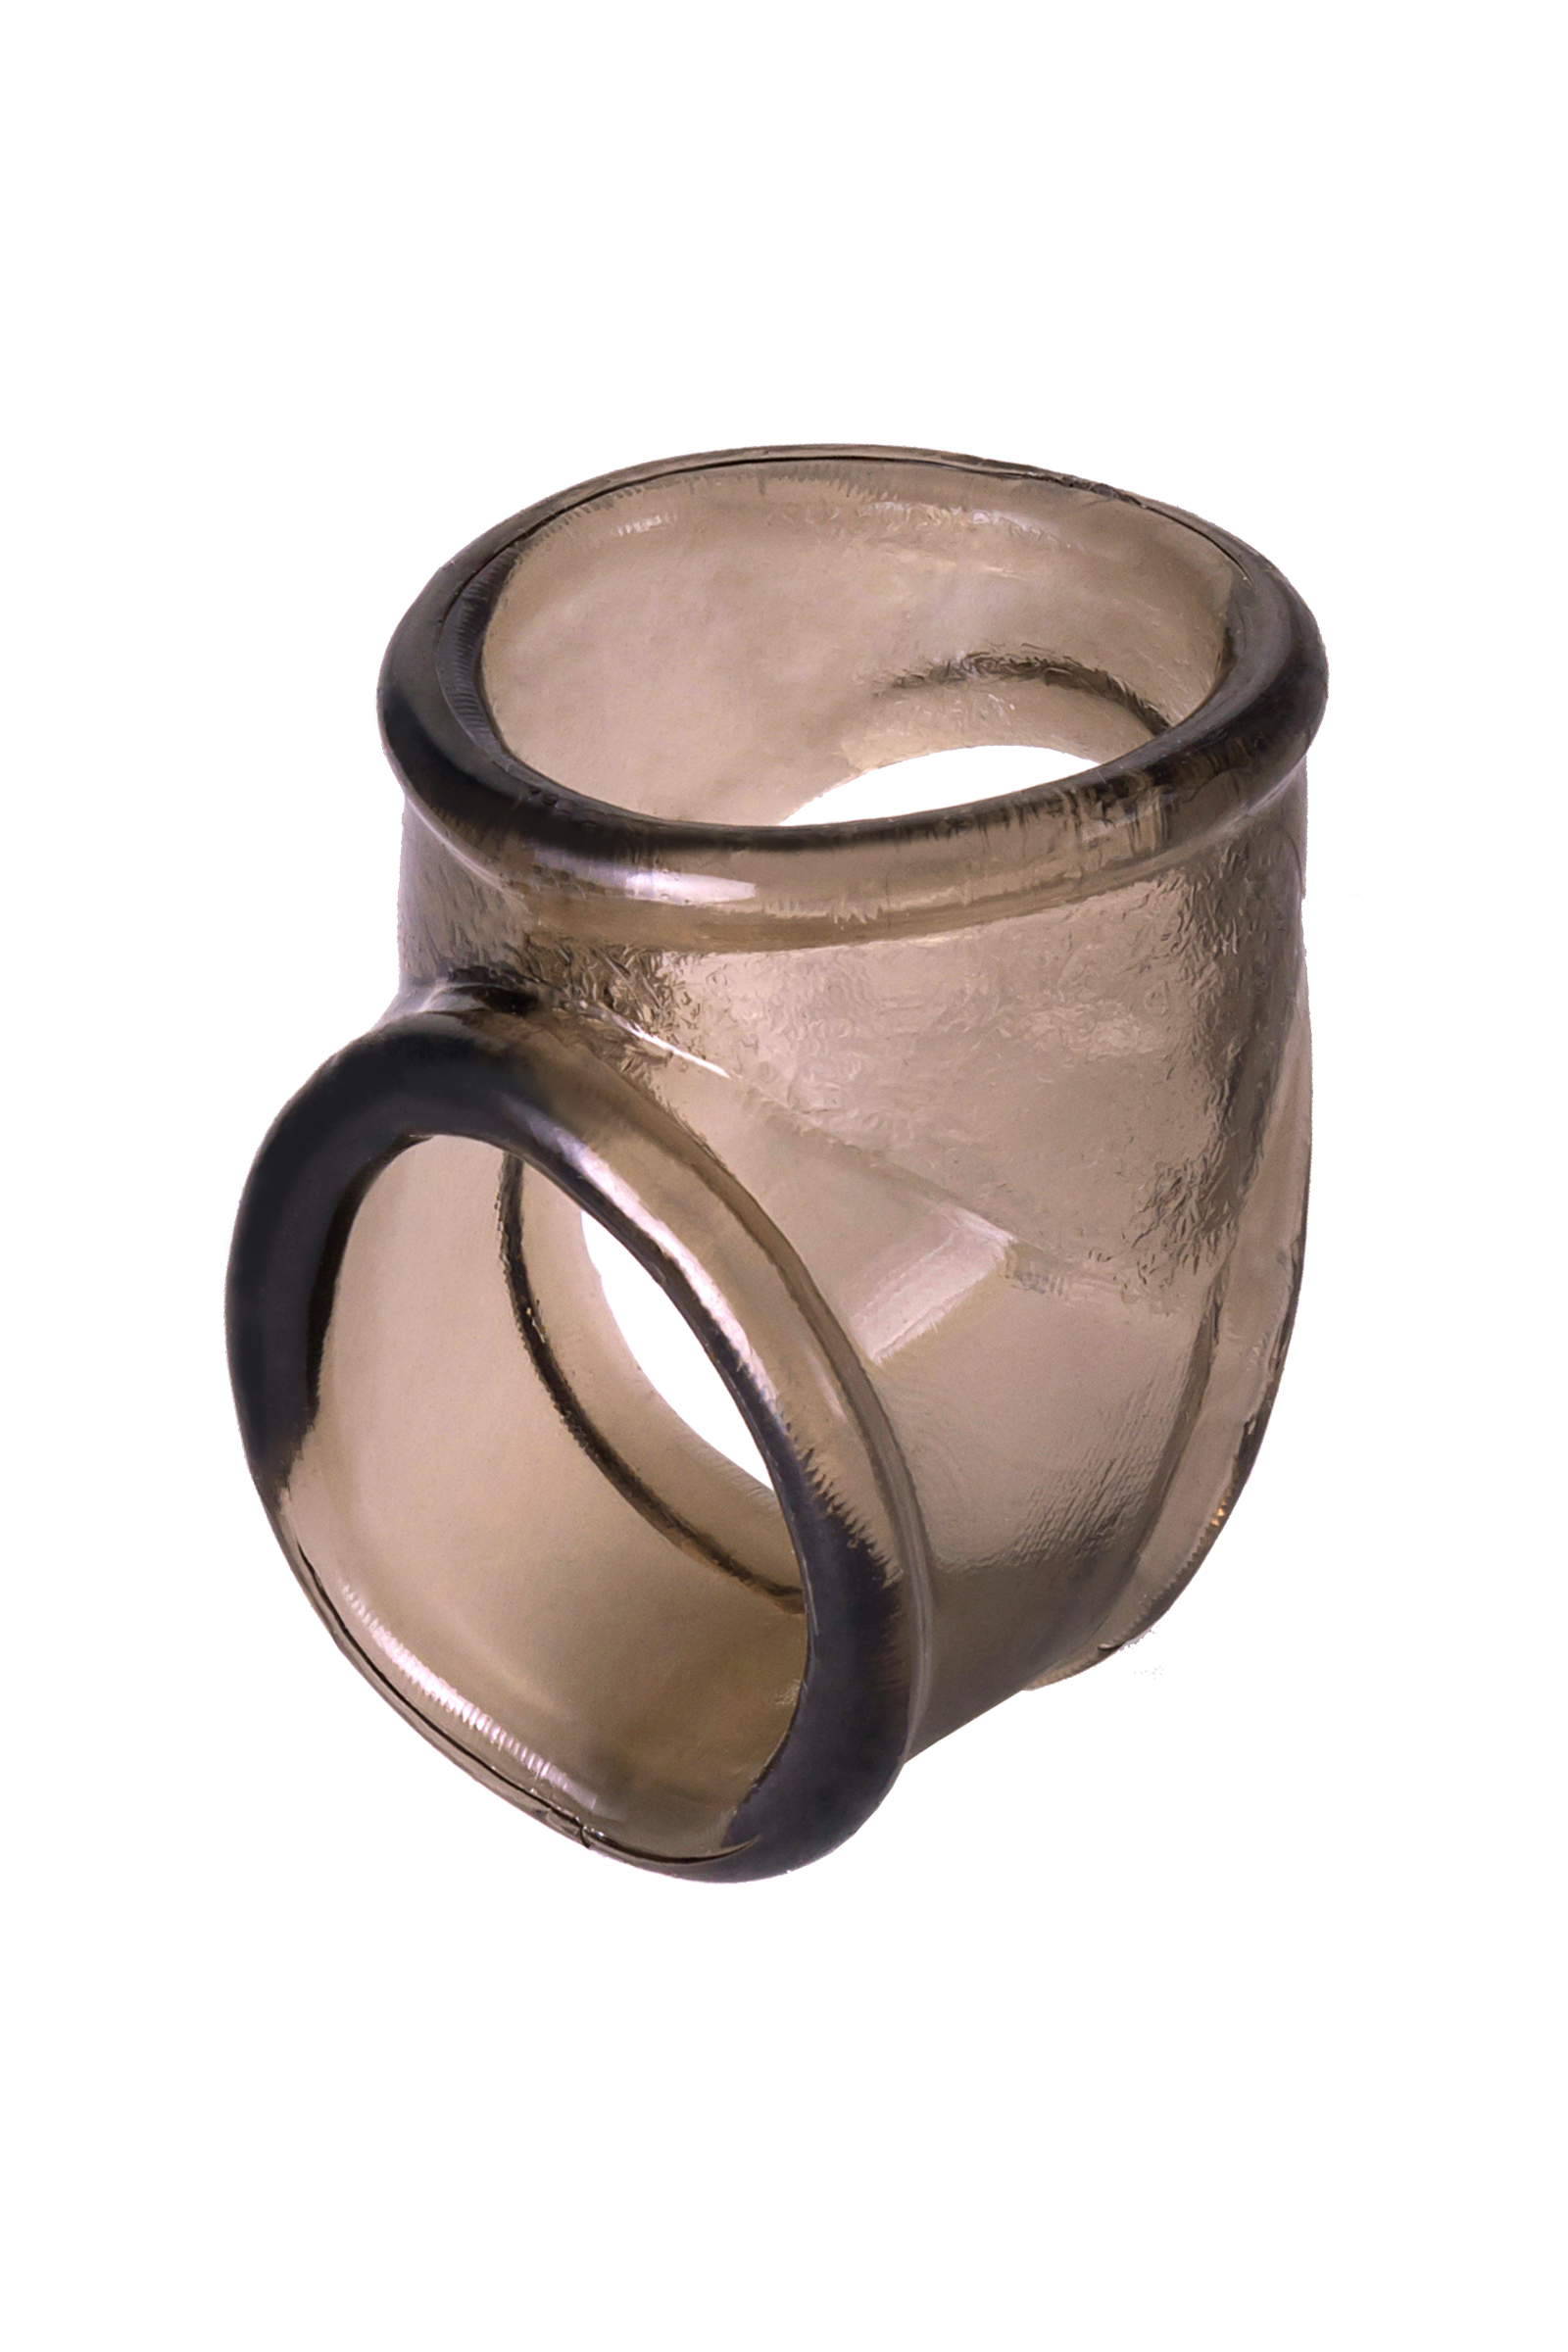 Эрекционное кольцо на пенис Toyfa XLover черное 3,5 см